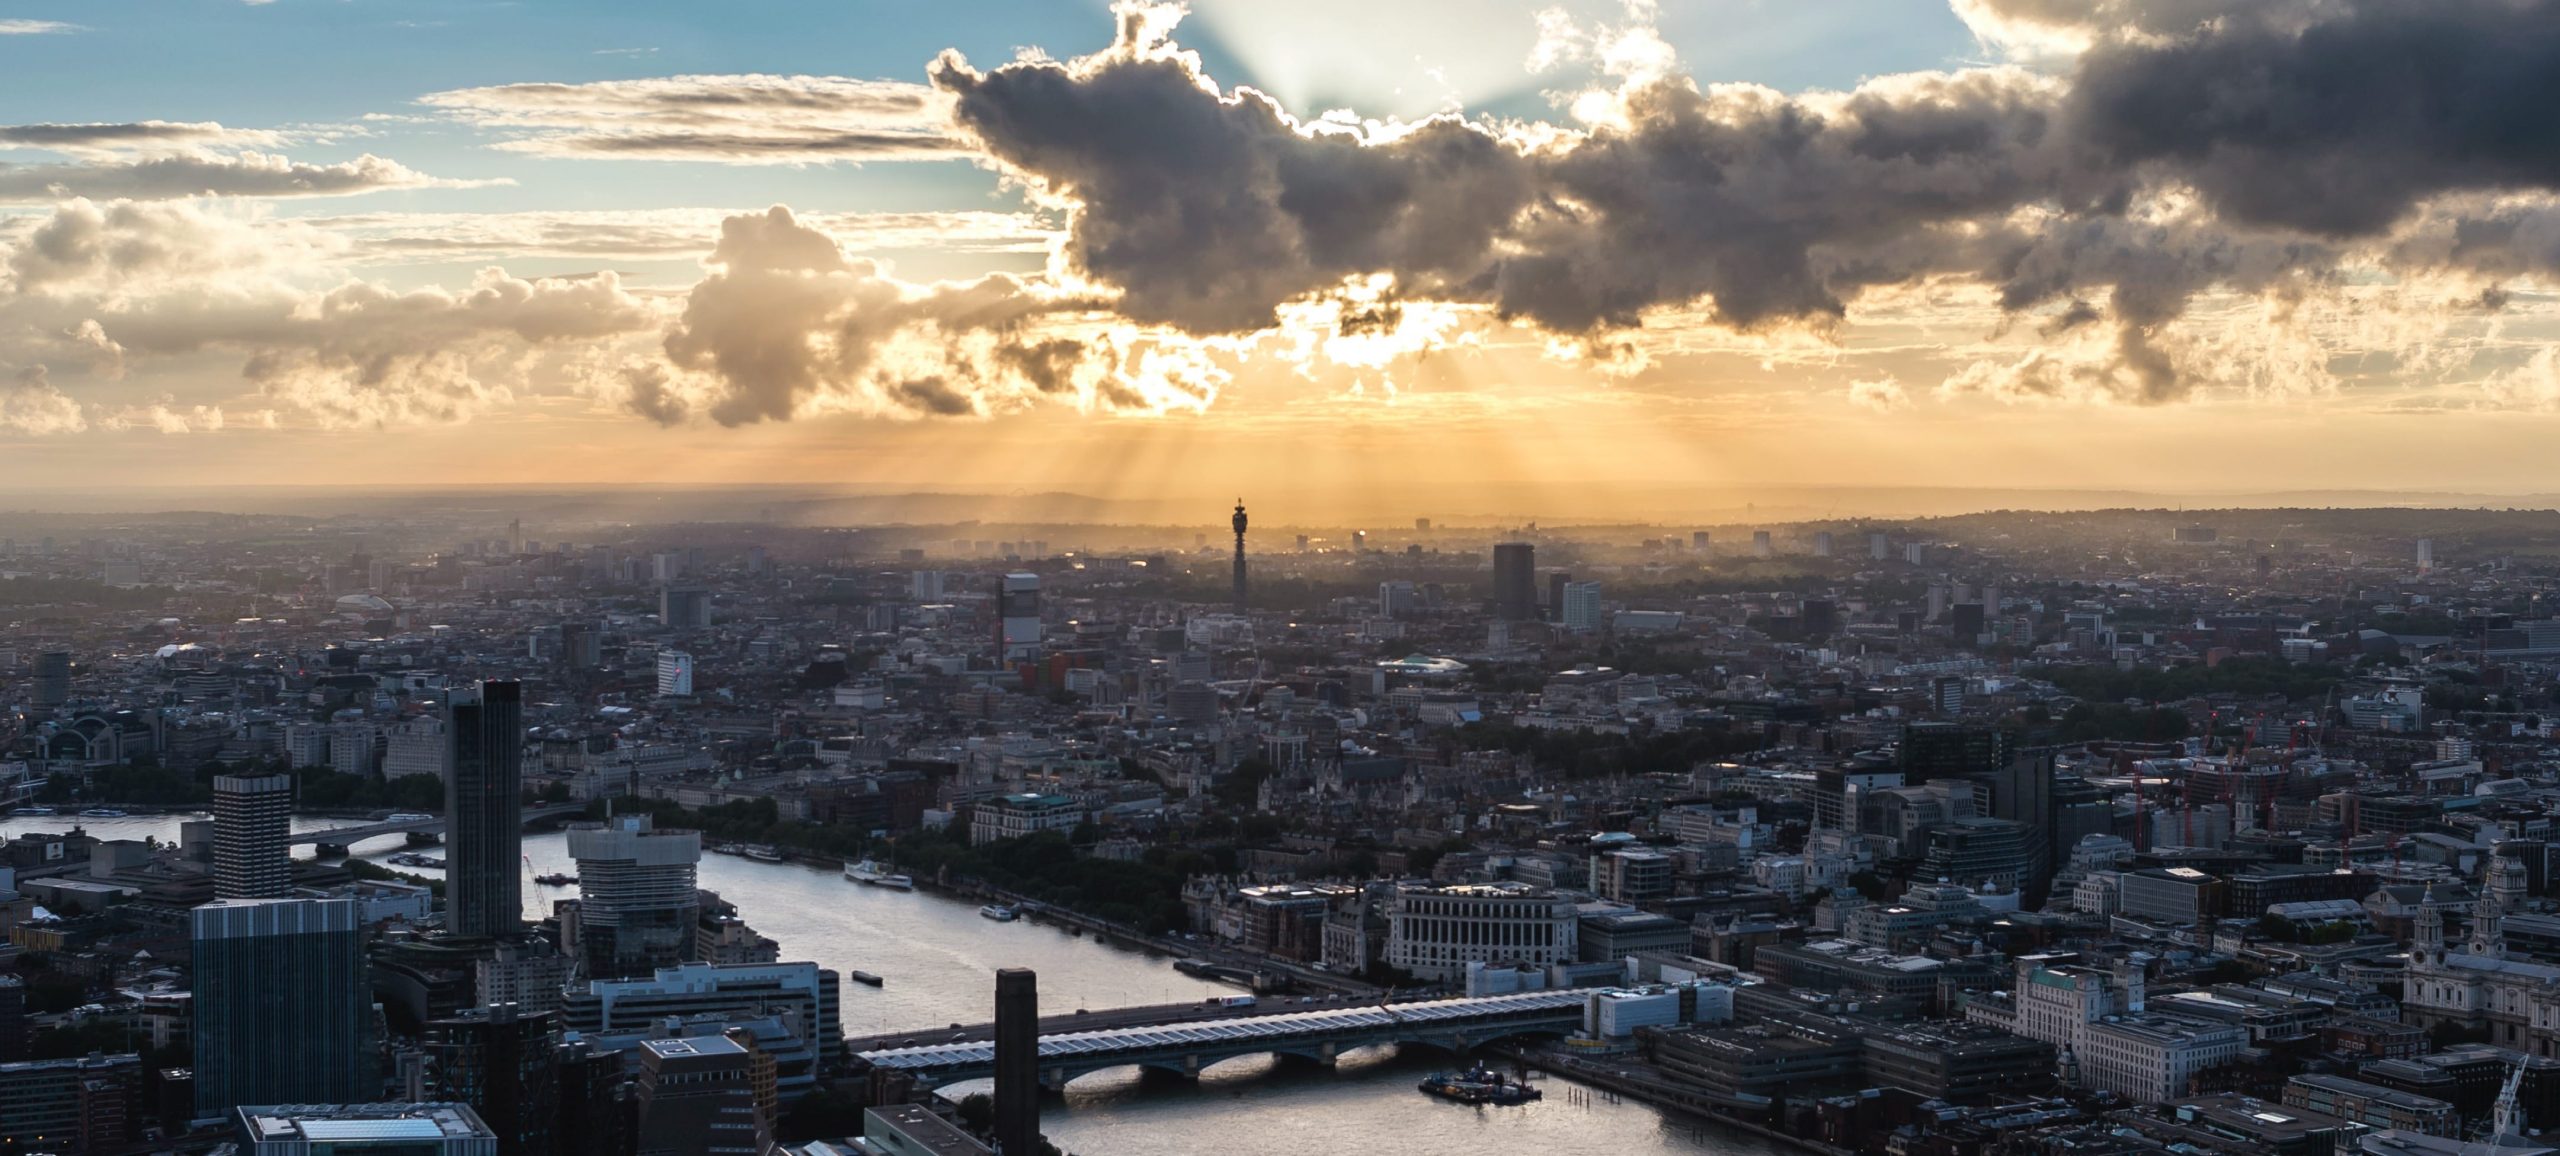 Cass Business School, aerial shot of London